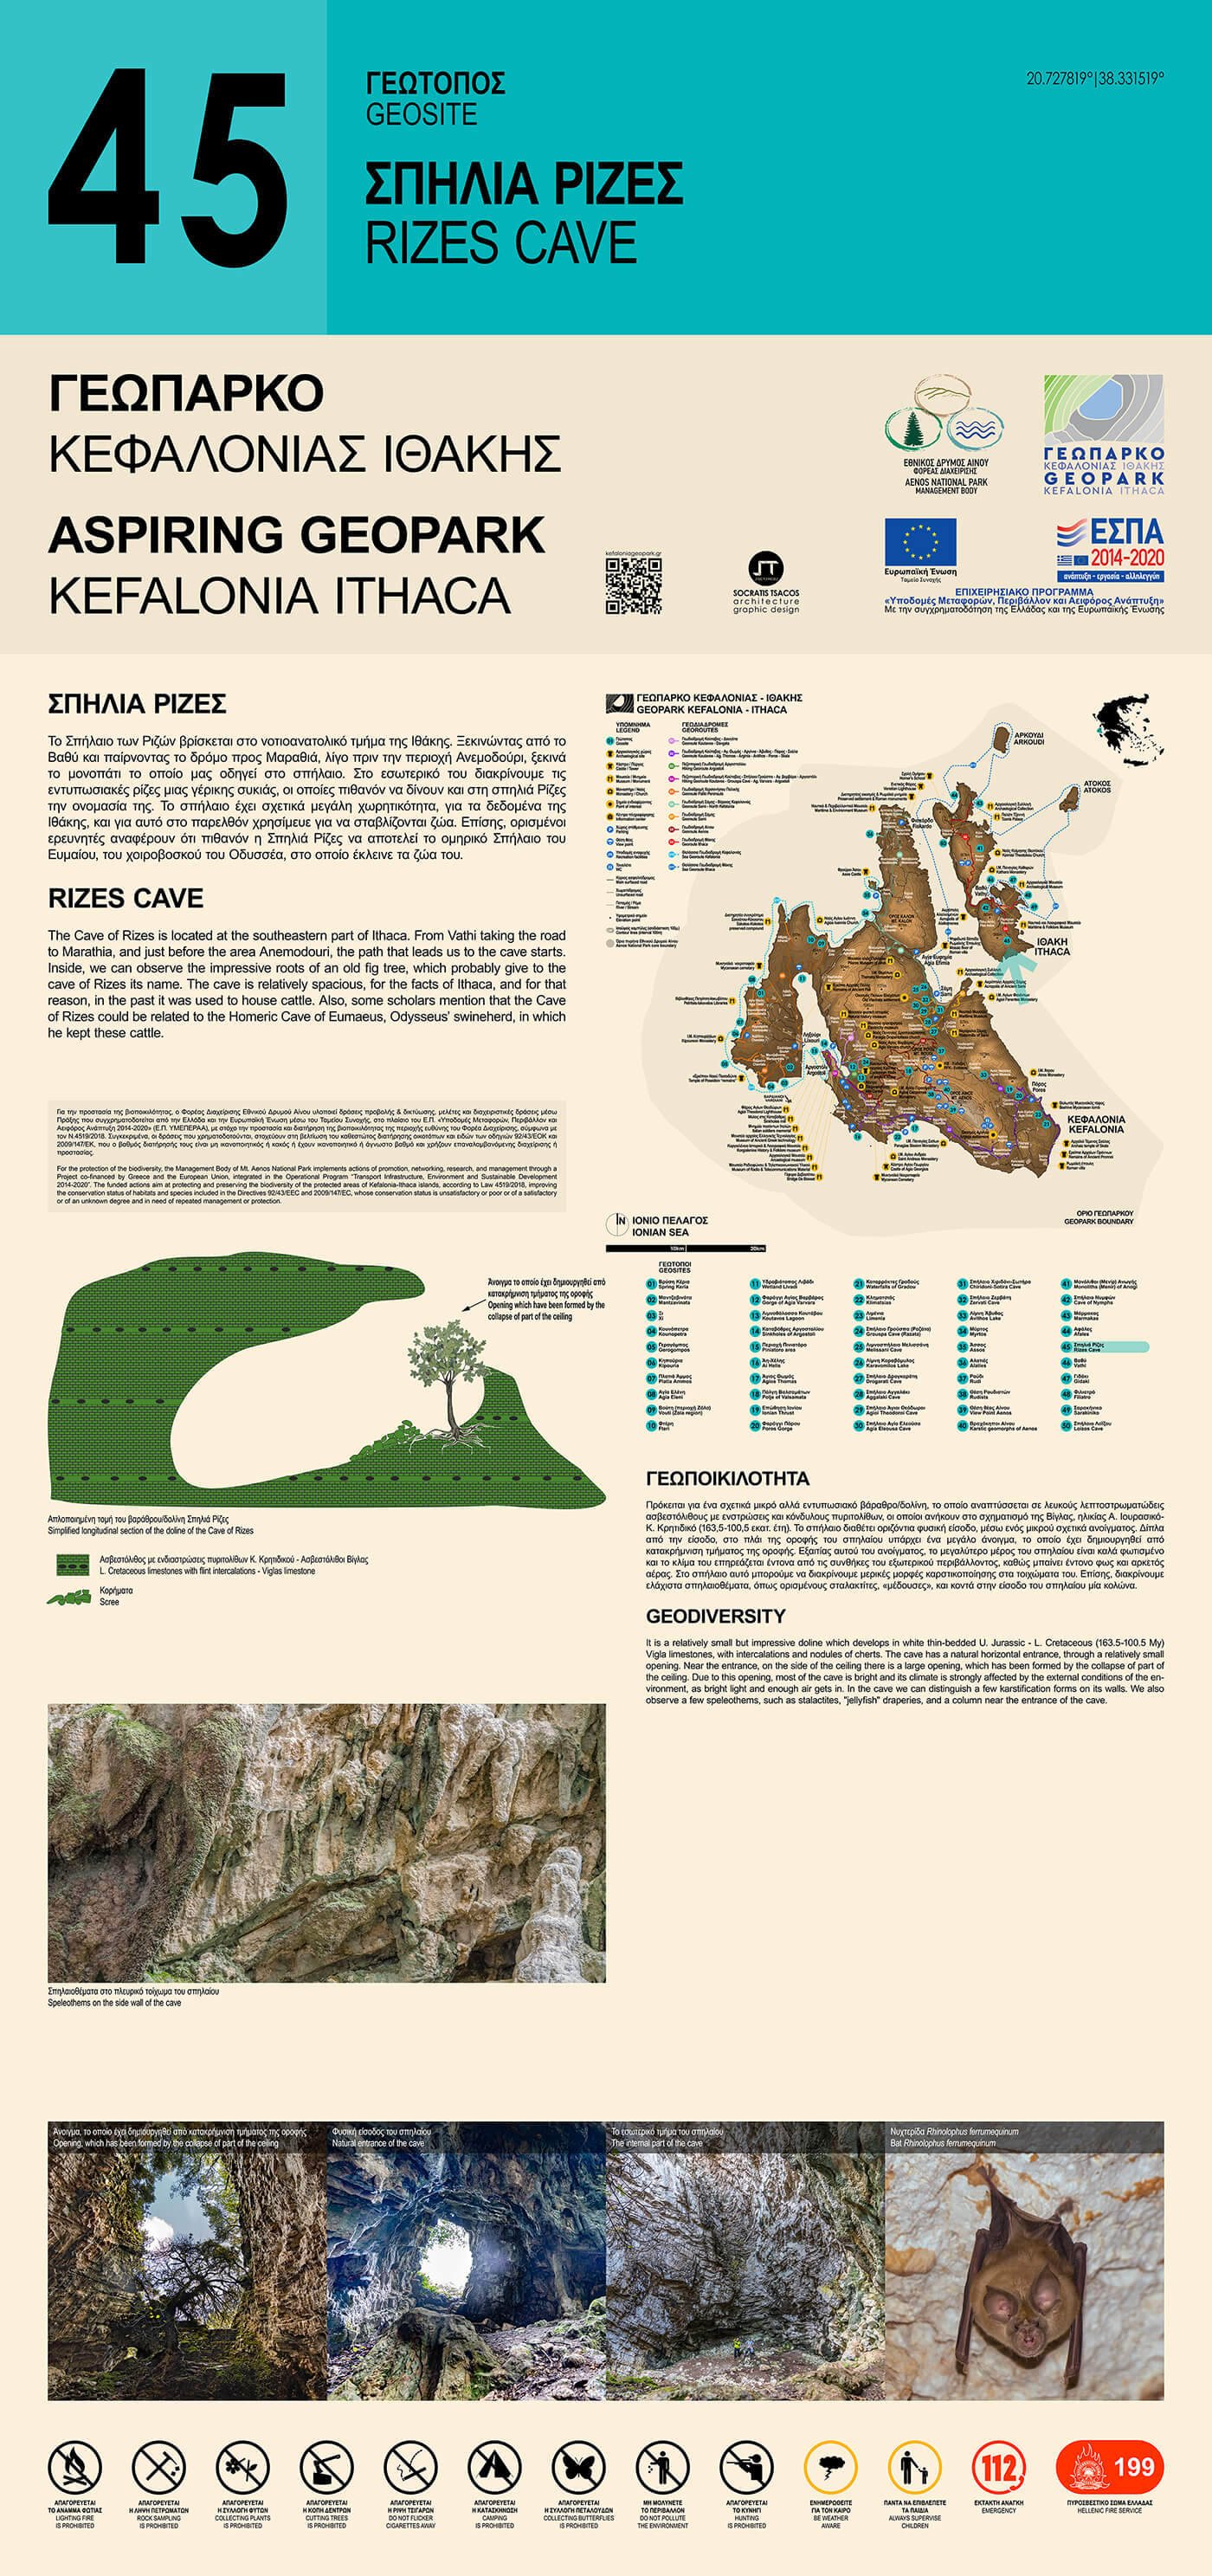 Το περιεχόμενο της Ερμηνευτικής Πινακίδας για τη γεωποικιλότητα και τη βιοποικιλότητα του Γεωτόπου Σπηλιά Ρίζες